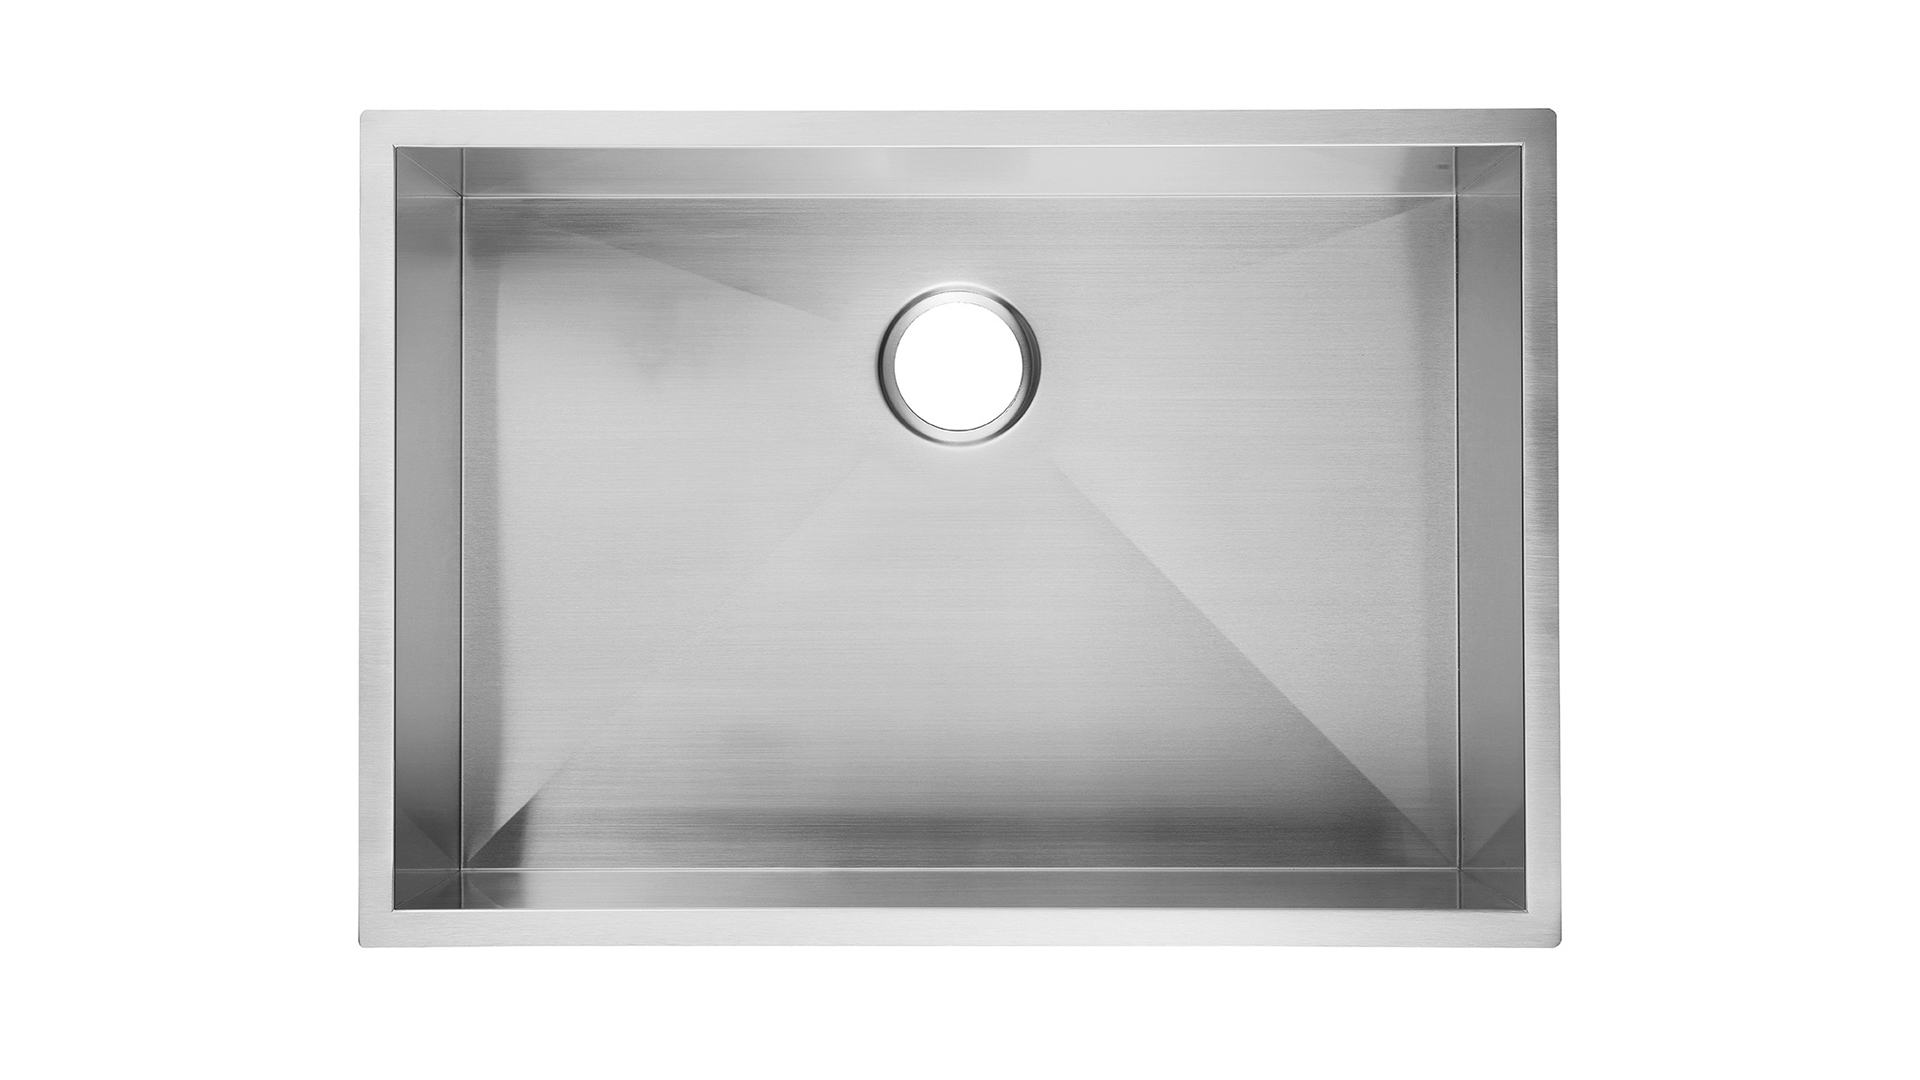 حوض مطبخ 23 بوصة Undermount من الفولاذ المقاوم للصدأ بعمق 9 بوصة ، حوض مطبخ Aquacubic Undermount